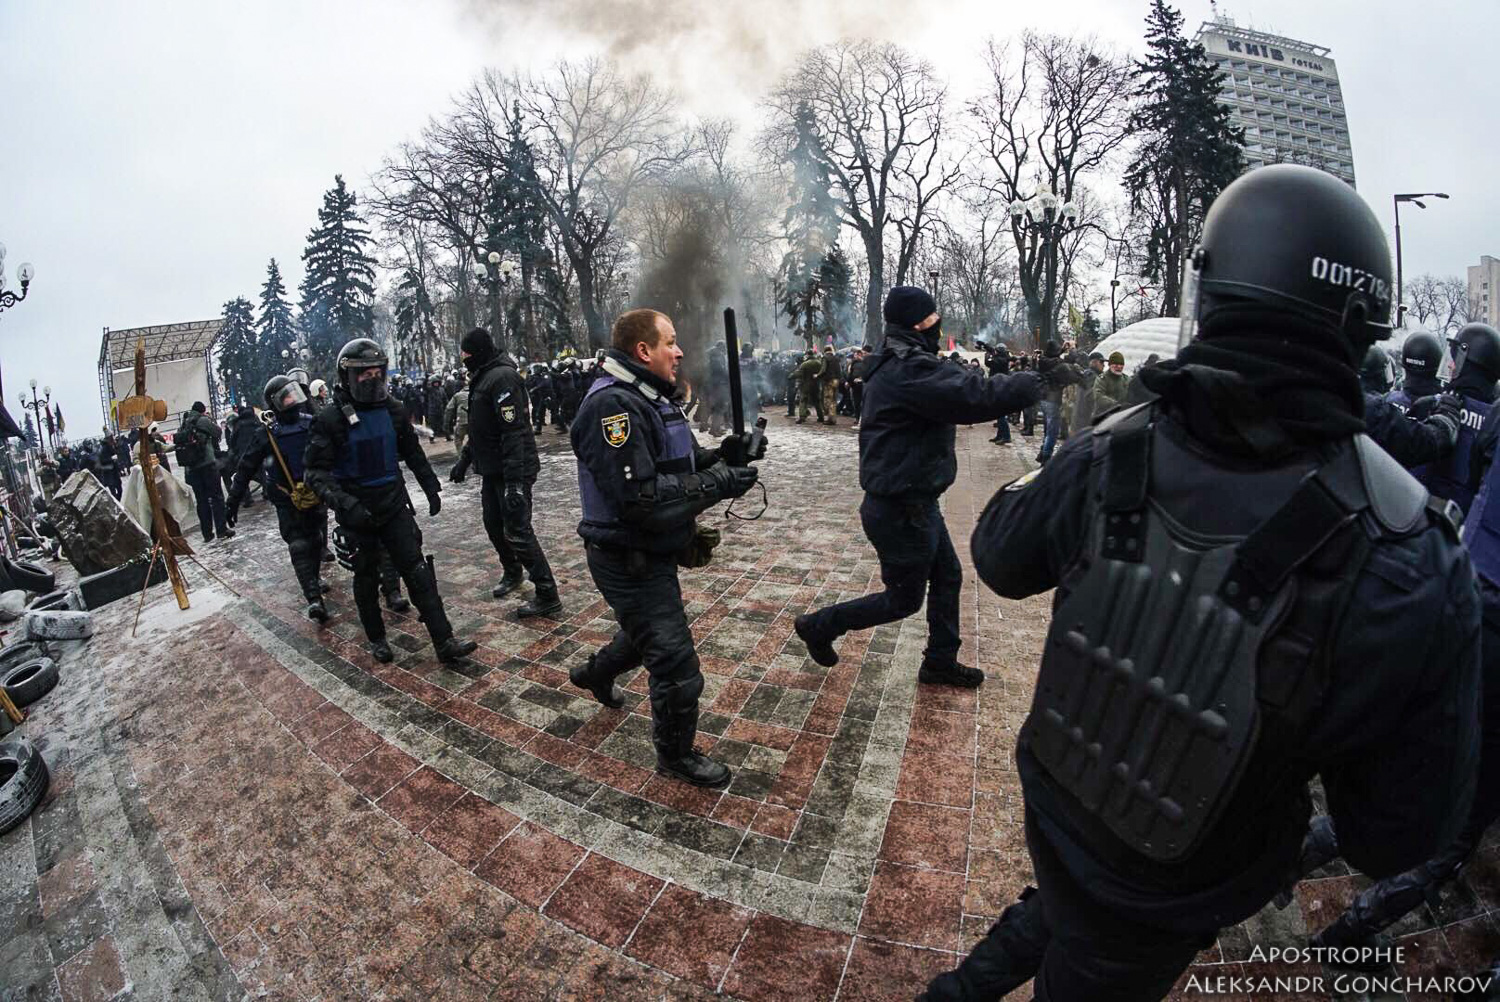 NATO - Ukraine News in brief. Tuesday 16 January. [Ukrainian sources] 0f26bce0d13d39dc2de710246ac7af38